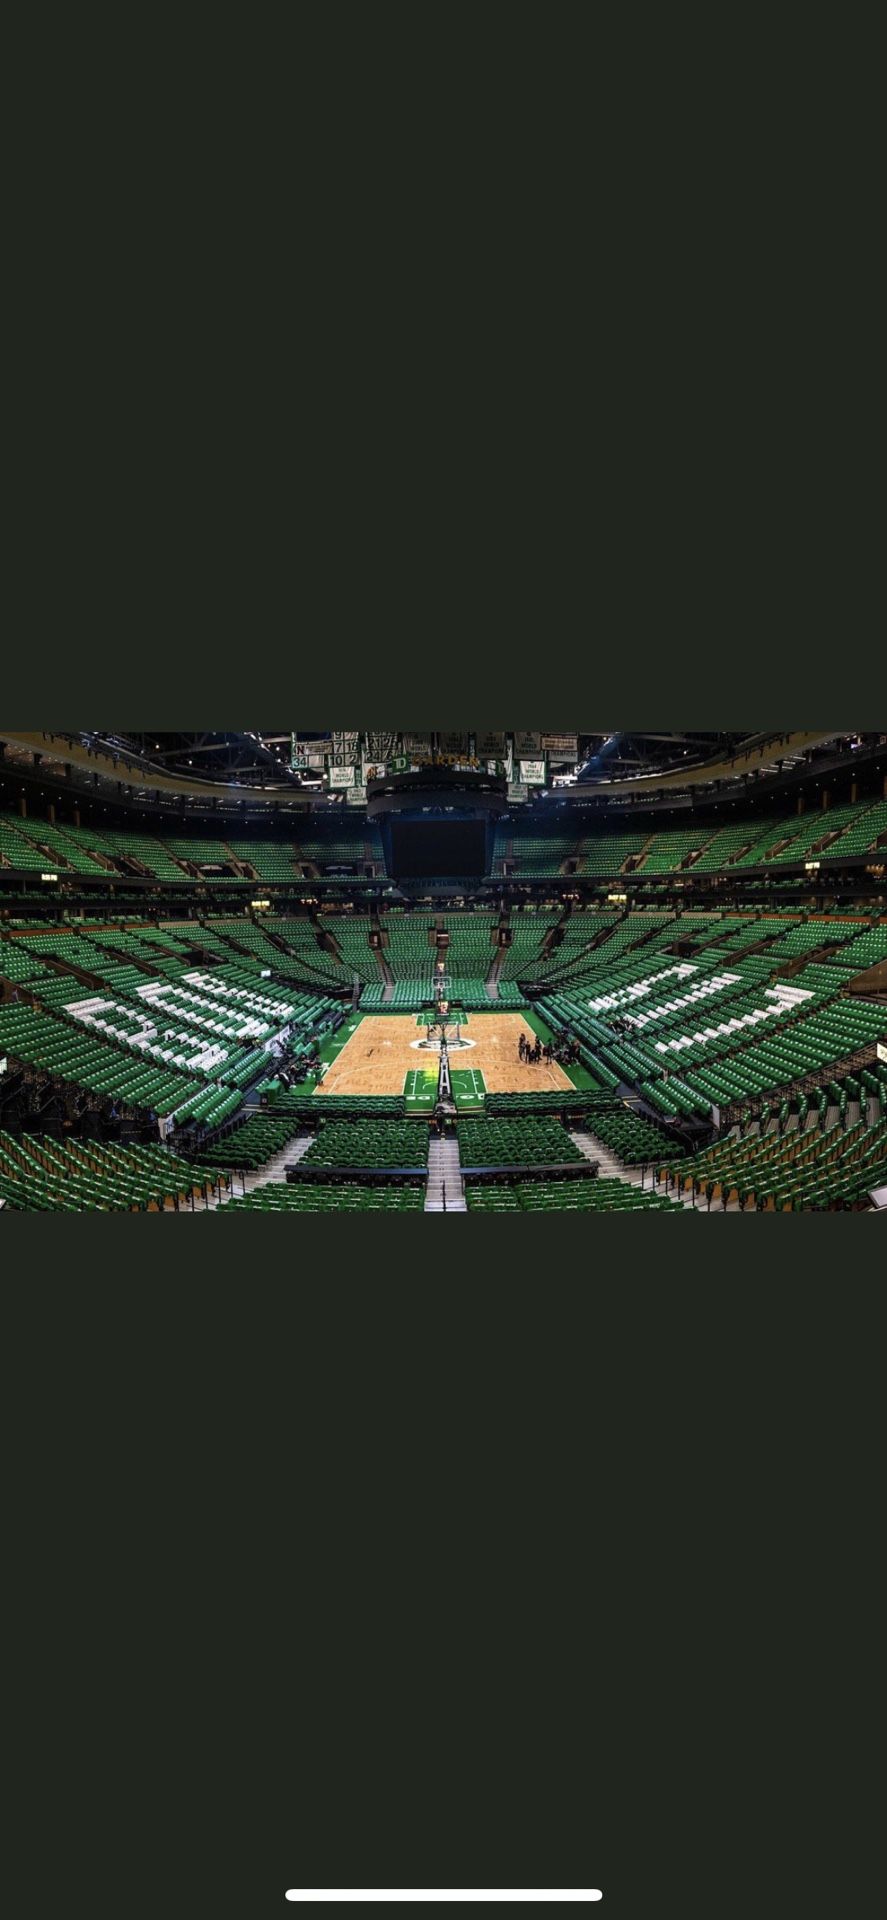 Celtics Tickets Available: 12/6 vs Knicks, 12/10 vs Pelicans, 12/14 vs Hawks